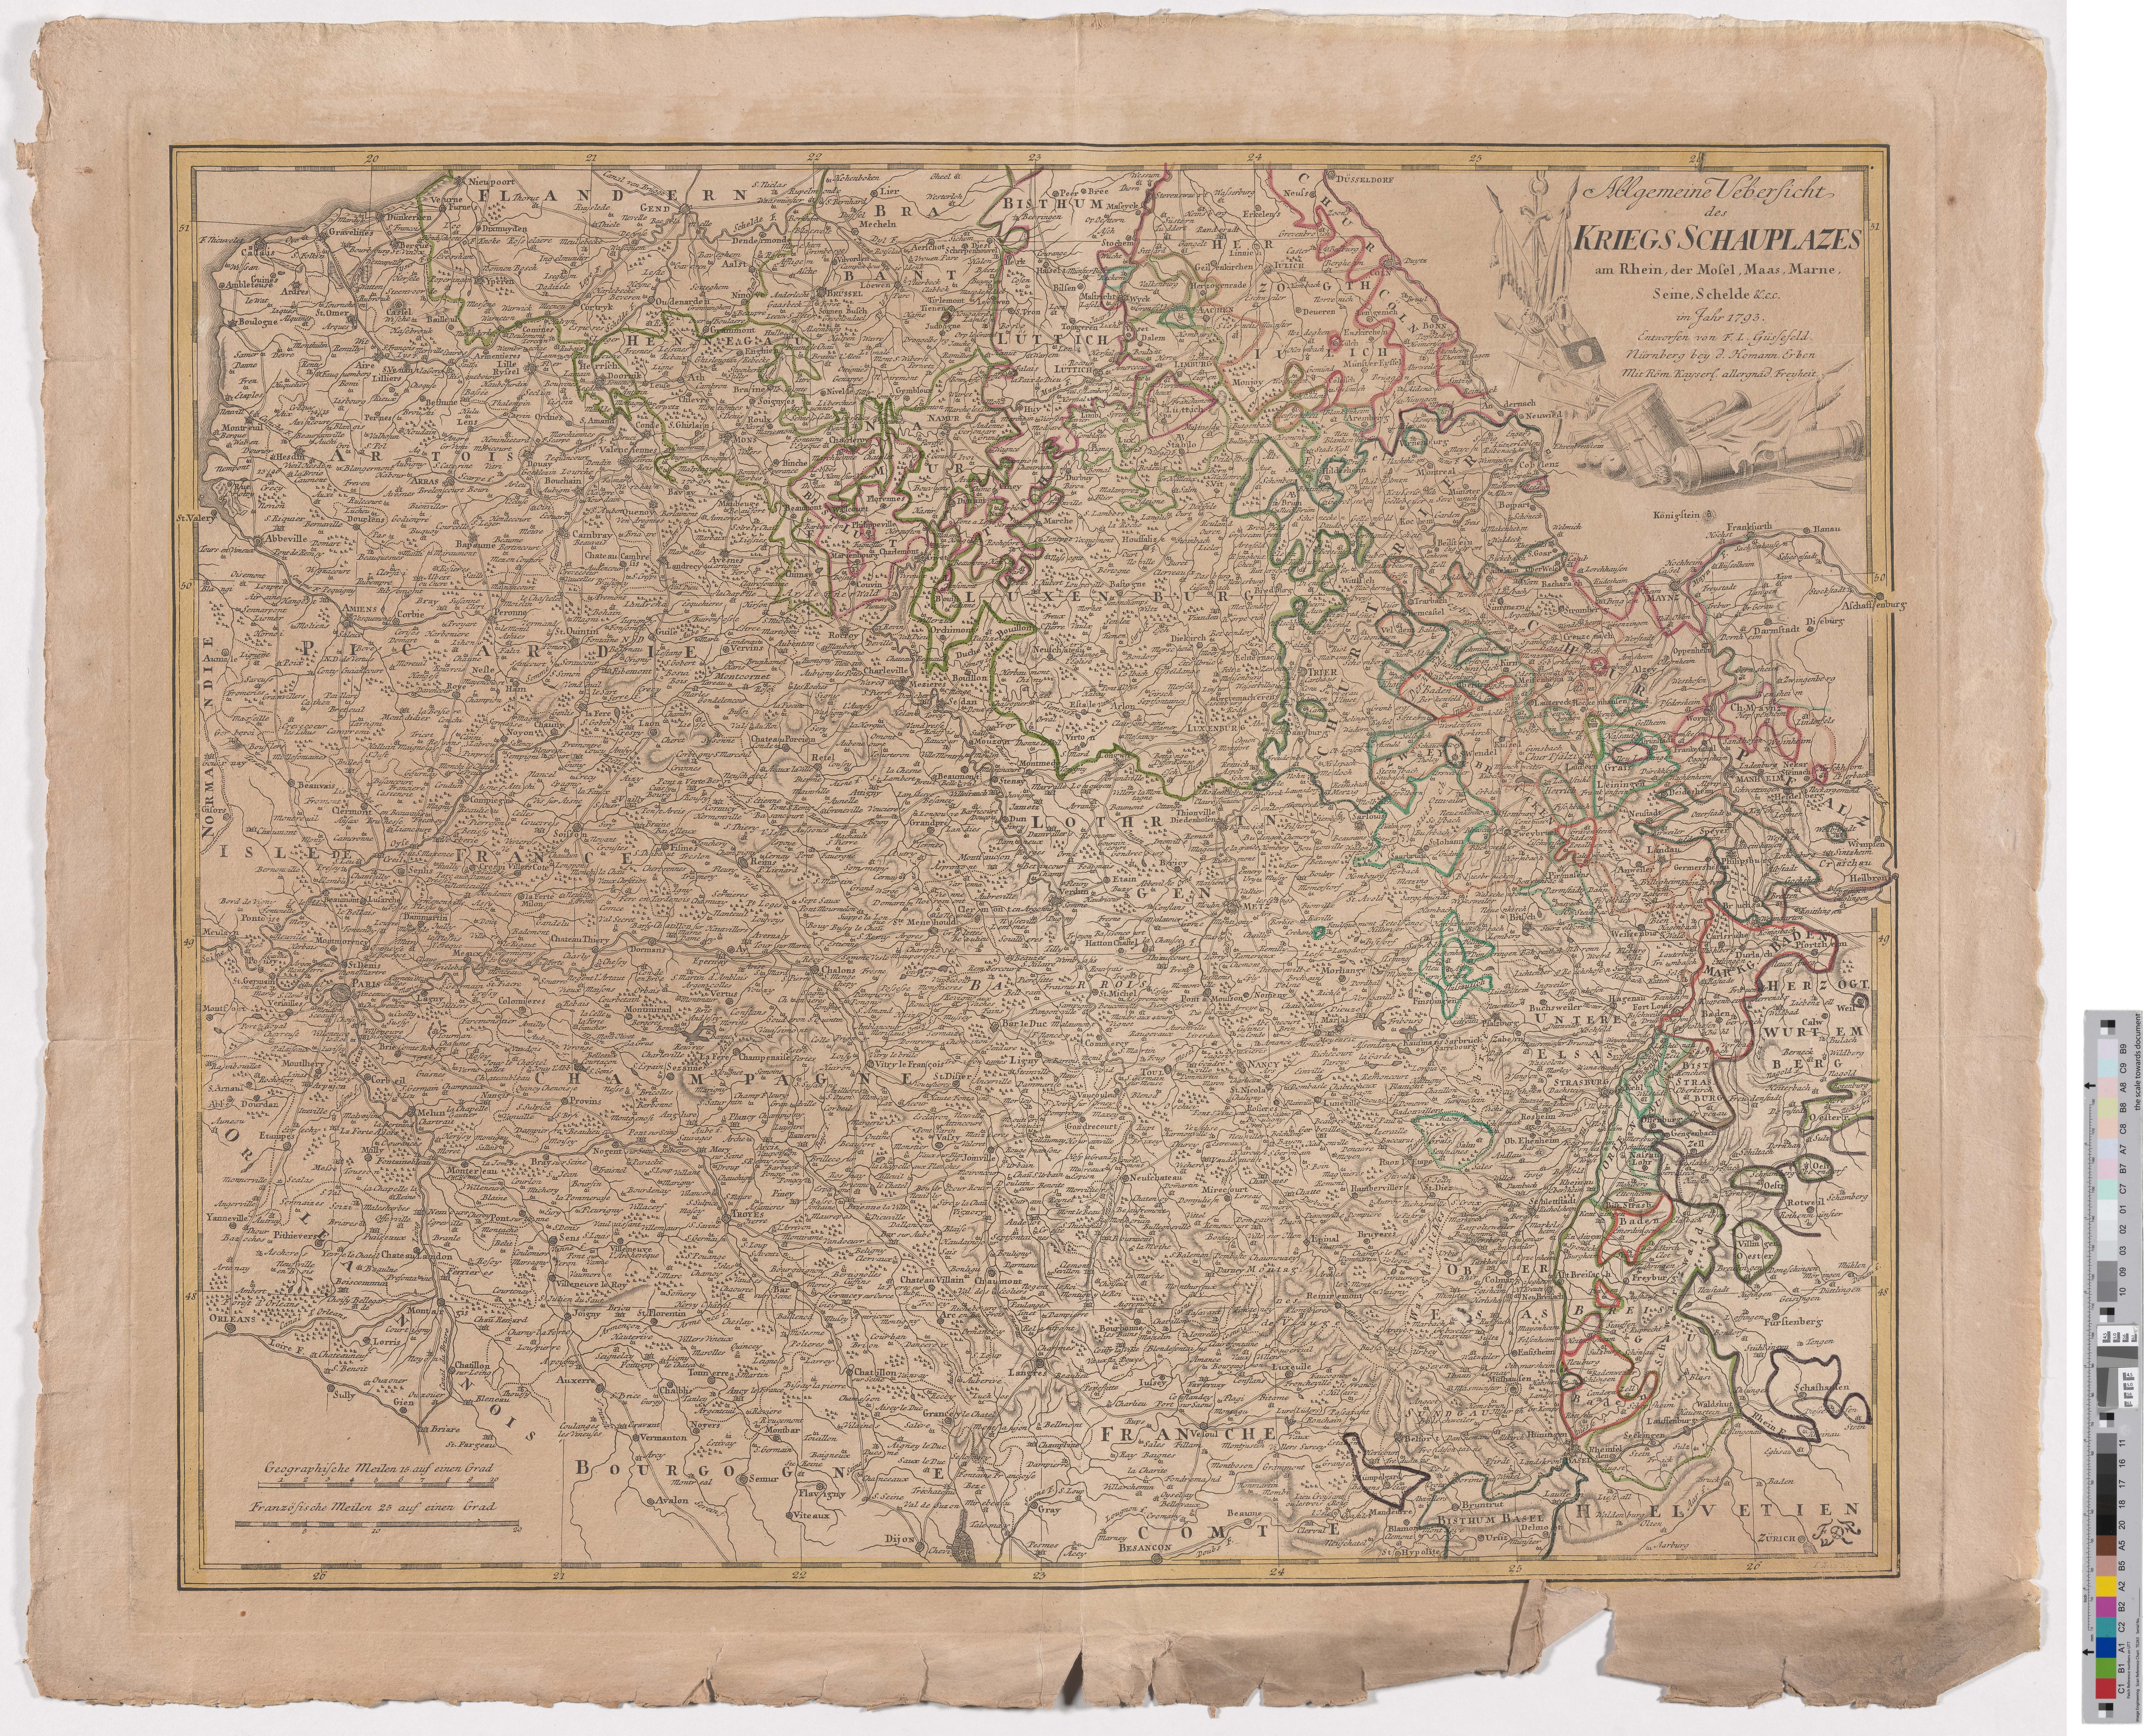 Landkarte "Allgemeine Uebersicht des Kriegsschauplatzes am Rhein, der Mosel, Maas, Marne, Seine, Schelde" (Kreismuseum Grimma RR-F)